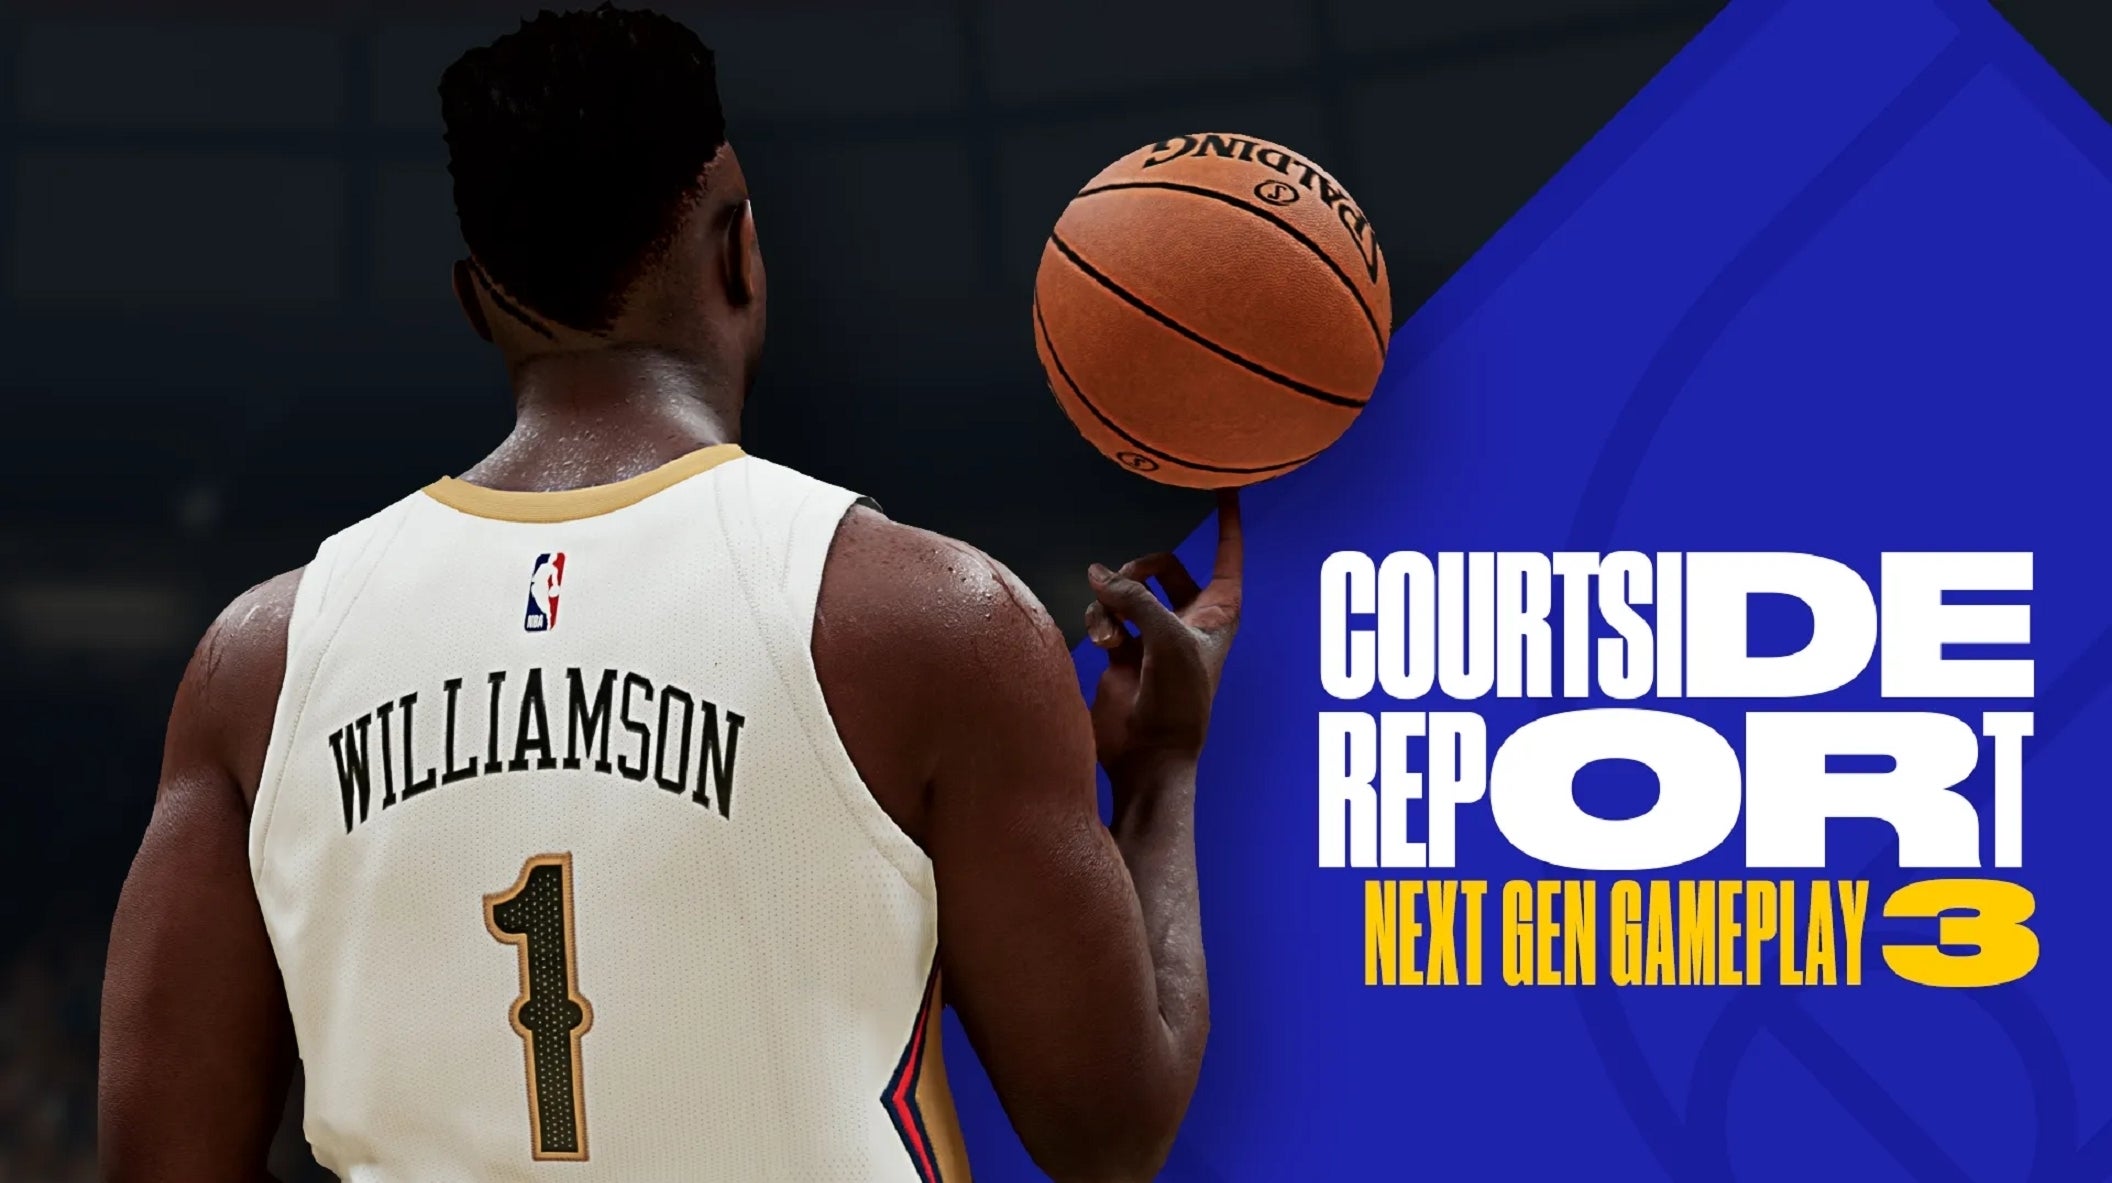 Bilder zu NBA 2K21: Next-Gen-Basketball - So dribbelt es sich auf PS5 und Xbox Series X